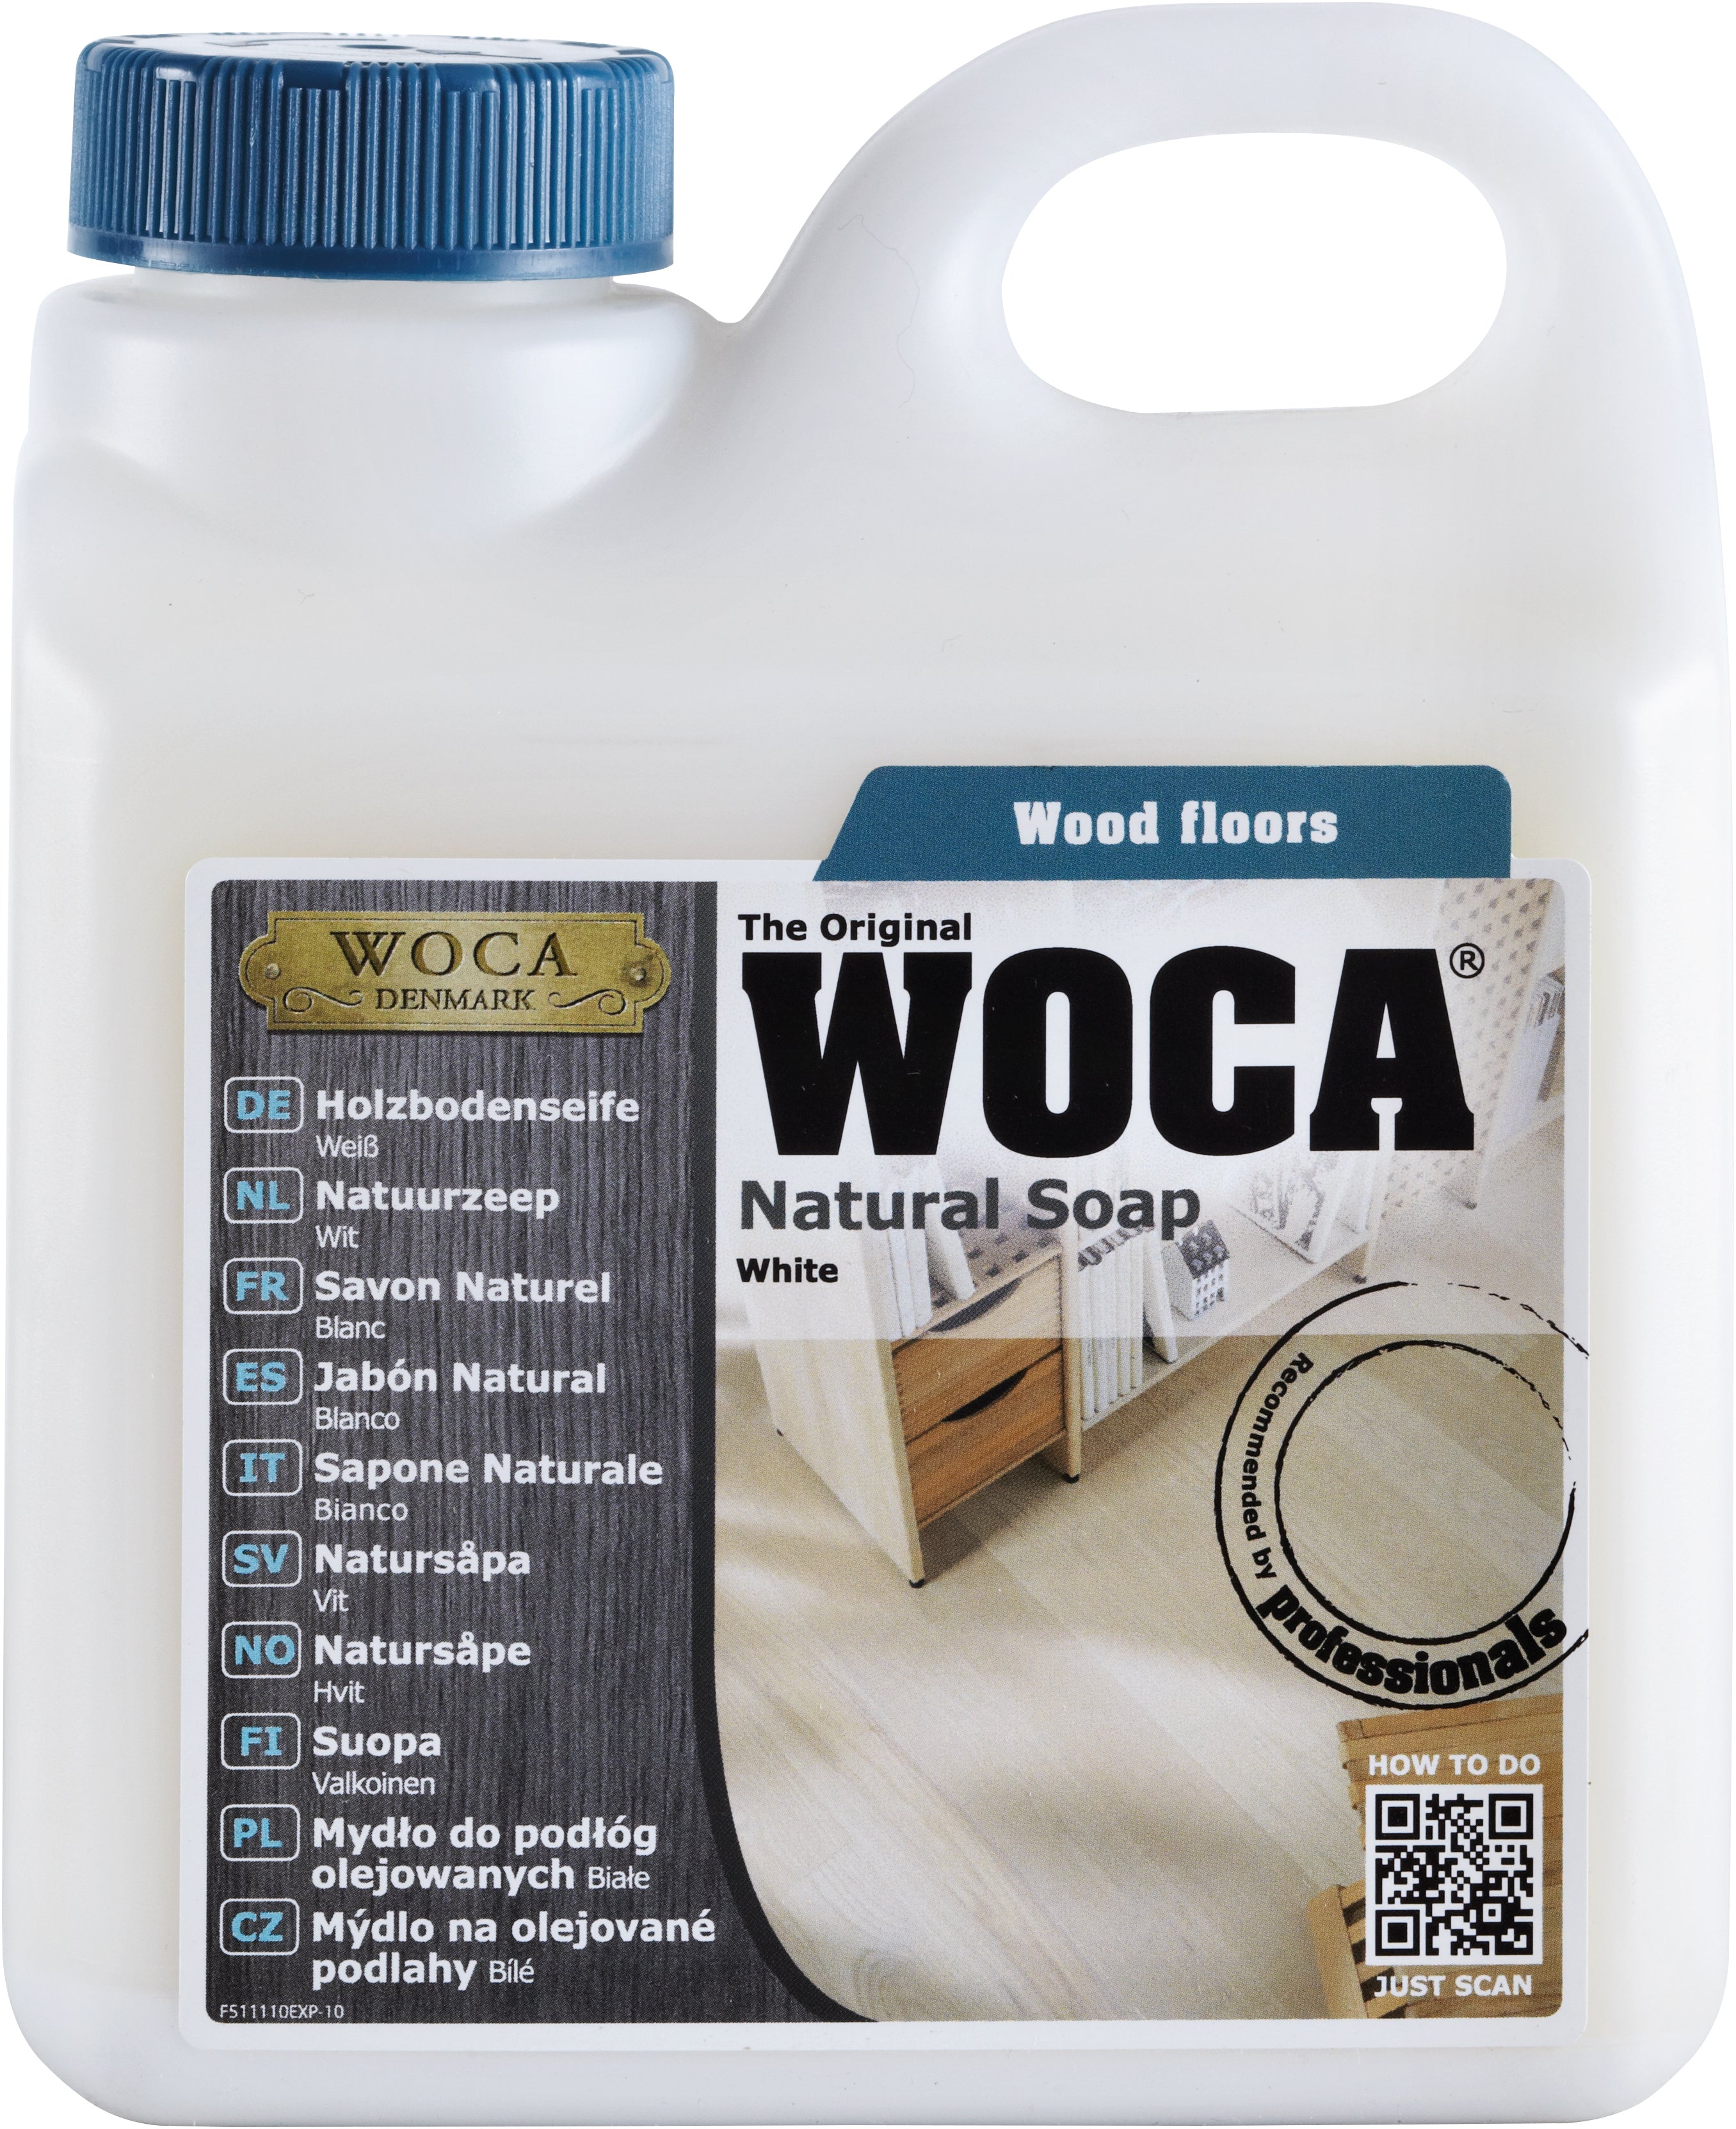 WOCA Natural Soap - Blanc